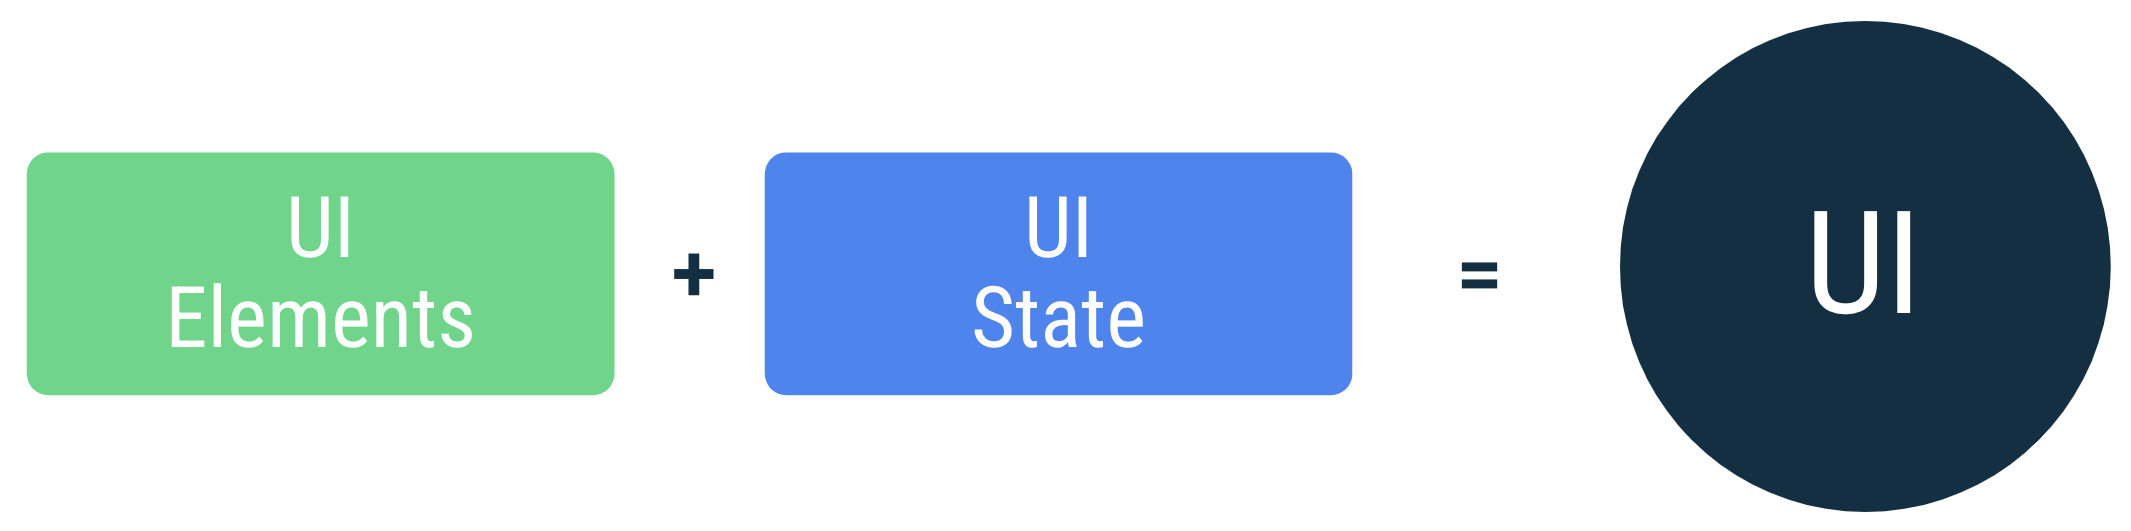 使用者介面是將螢幕上的 UI 元素與使用者介面狀態繫結的結果。